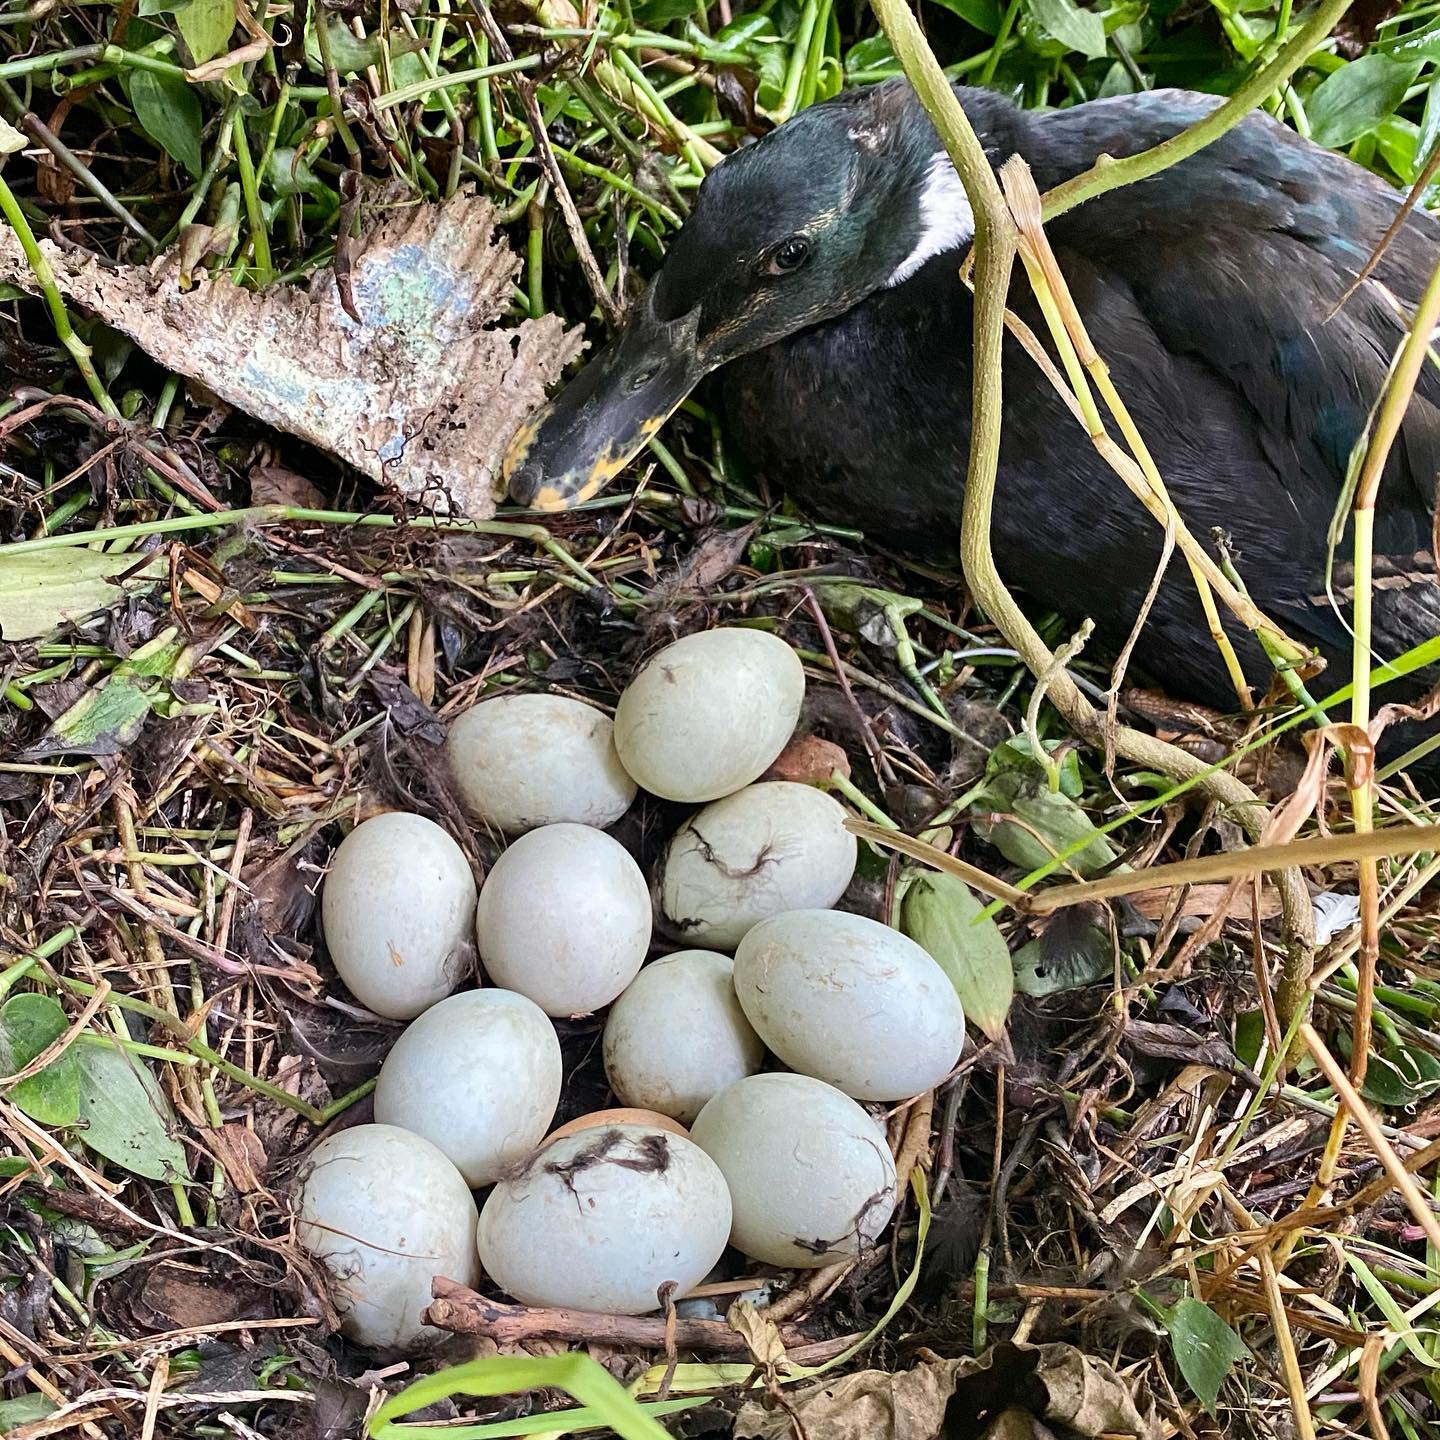 Found another hidden egg 🥚 nest !